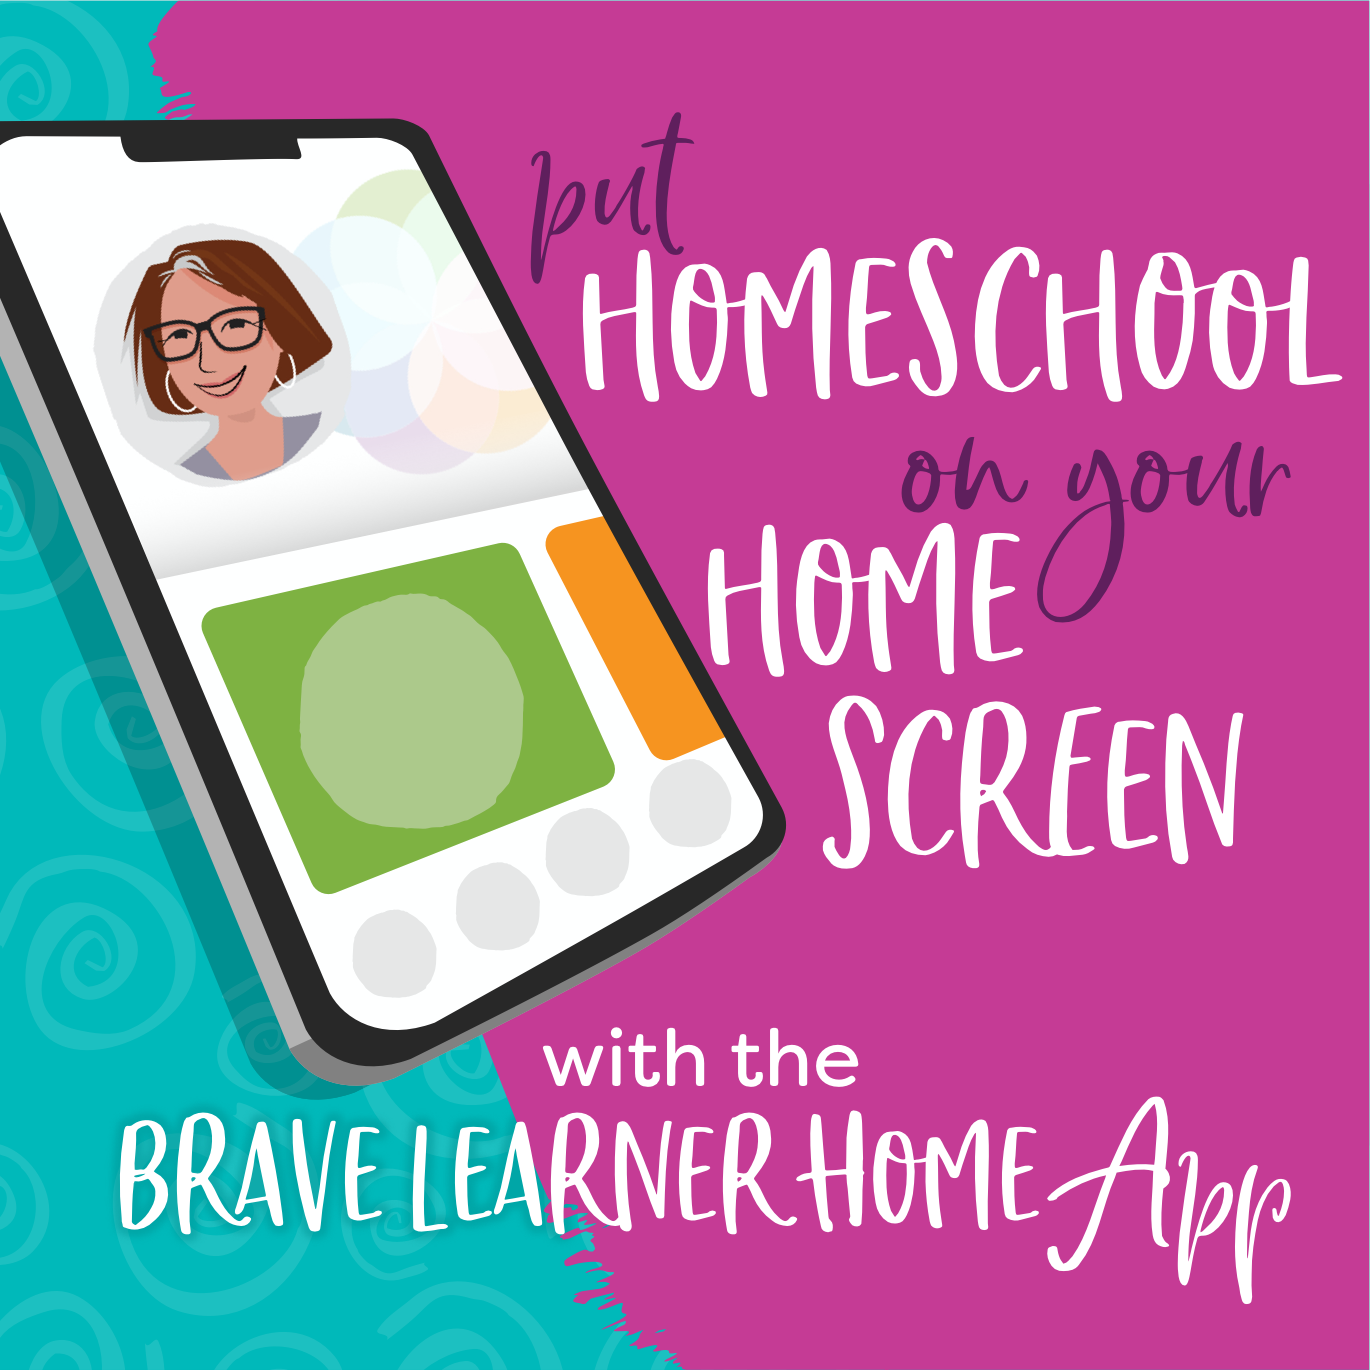 Brave Learner Home App